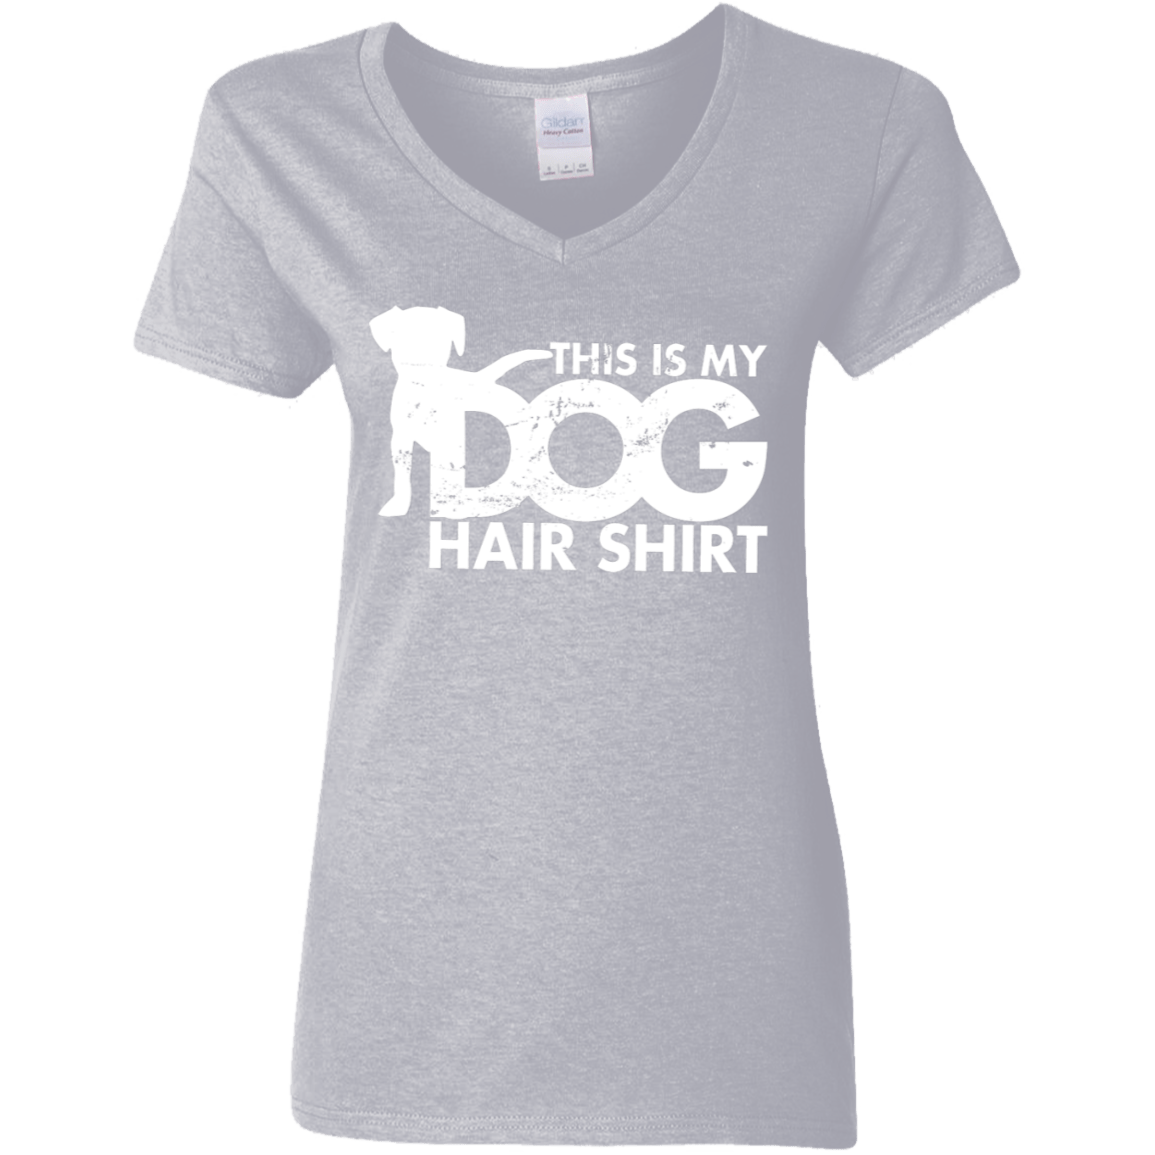 Dog Hair Shirt - Ladies V Neck.